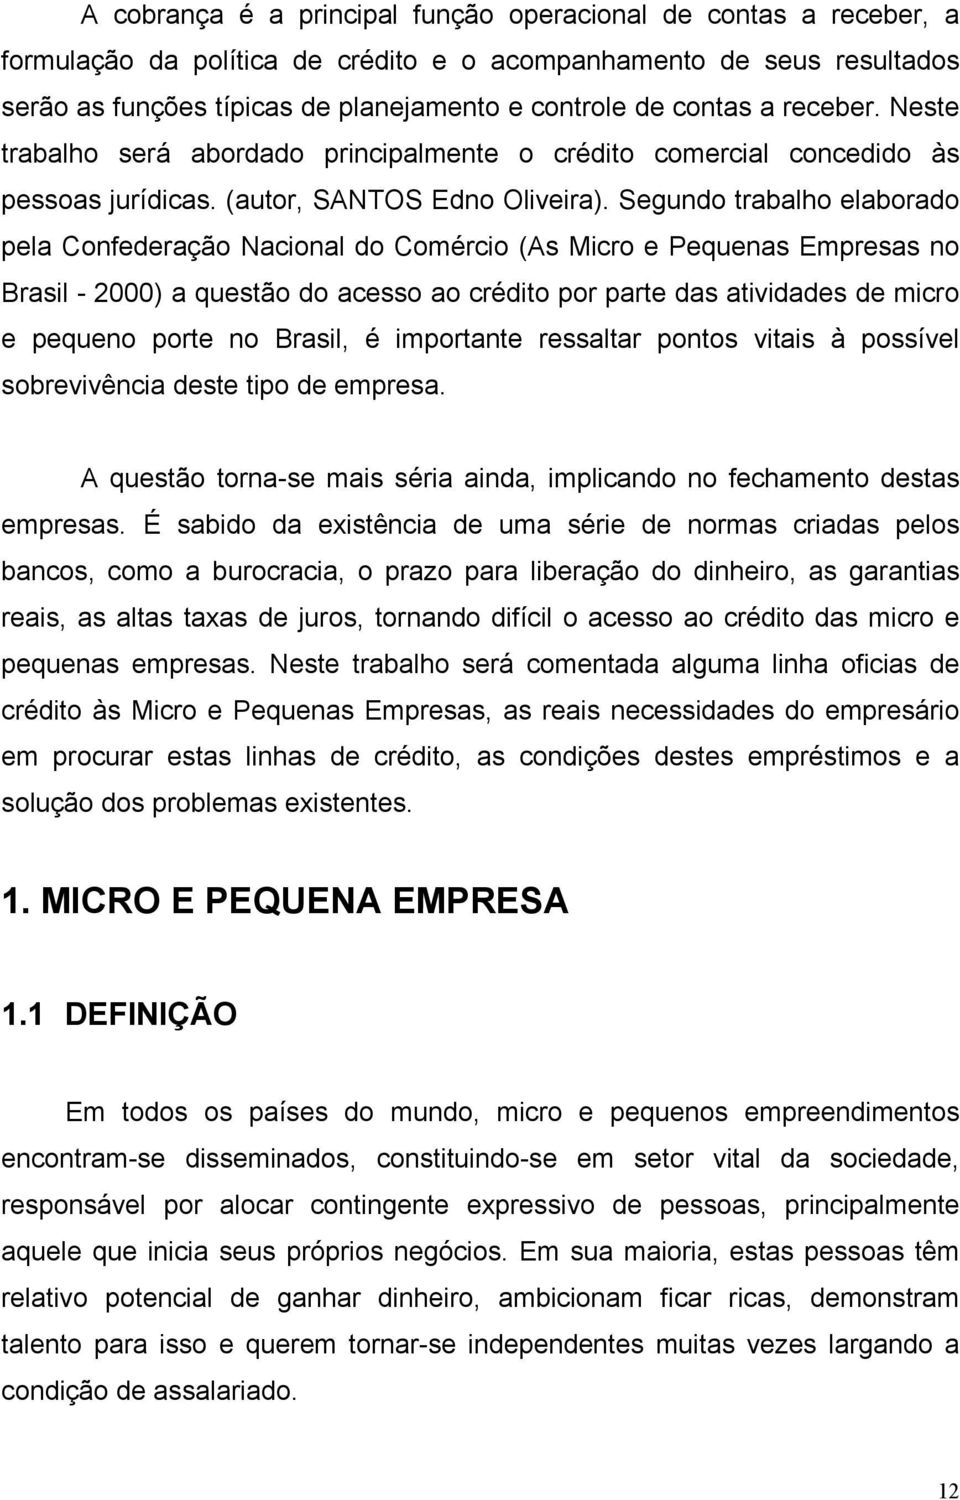 Segundo trabalho elaborado pela Confederação Nacional do Comércio (As Micro e Pequenas Empresas no Brasil - 2000) a questão do acesso ao crédito por parte das atividades de micro e pequeno porte no